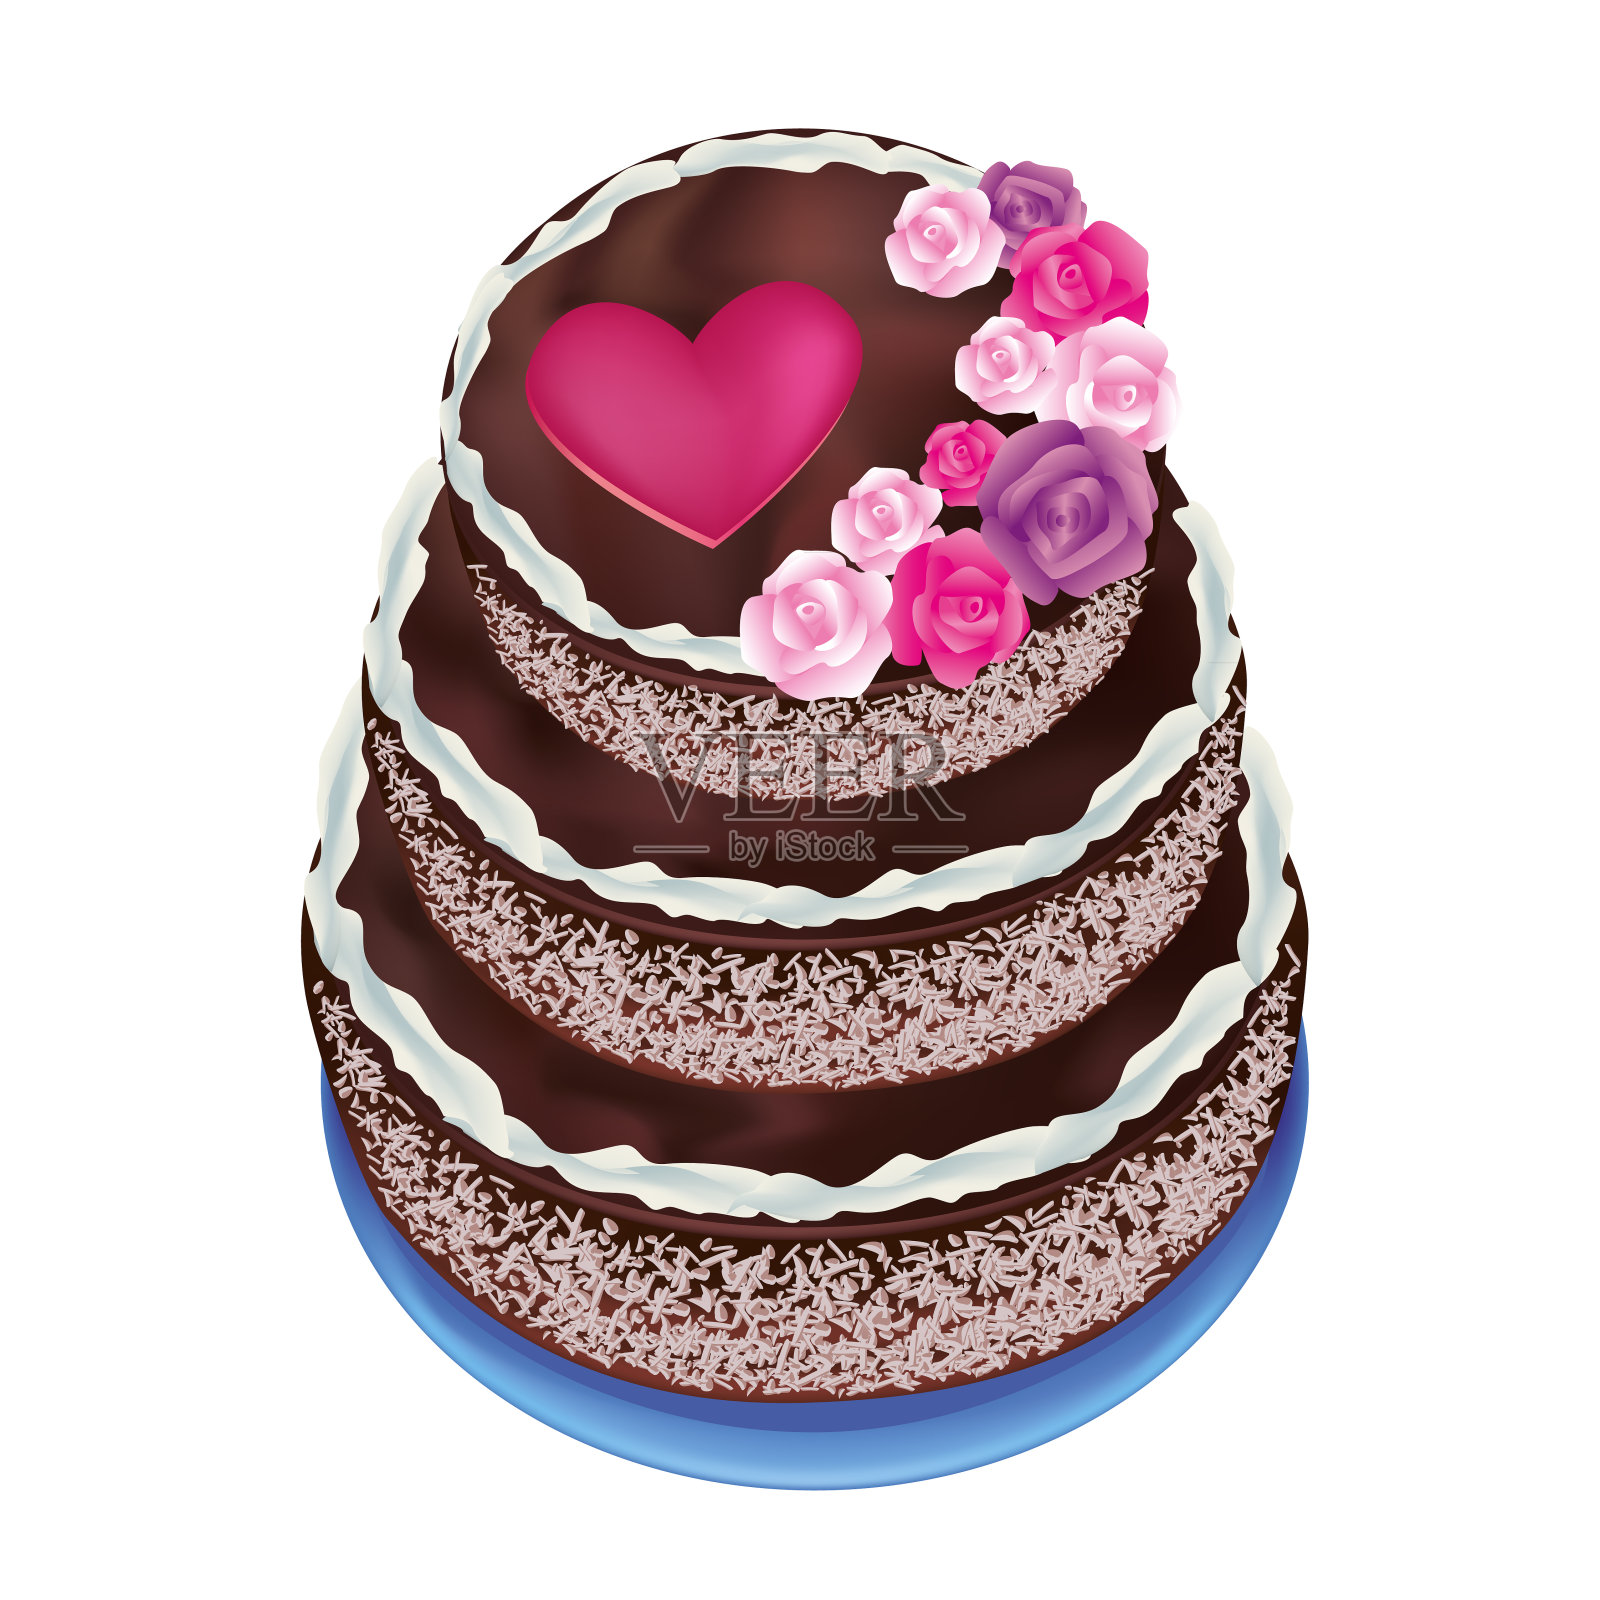 用玫瑰和心形装饰的庆祝蛋糕设计元素图片